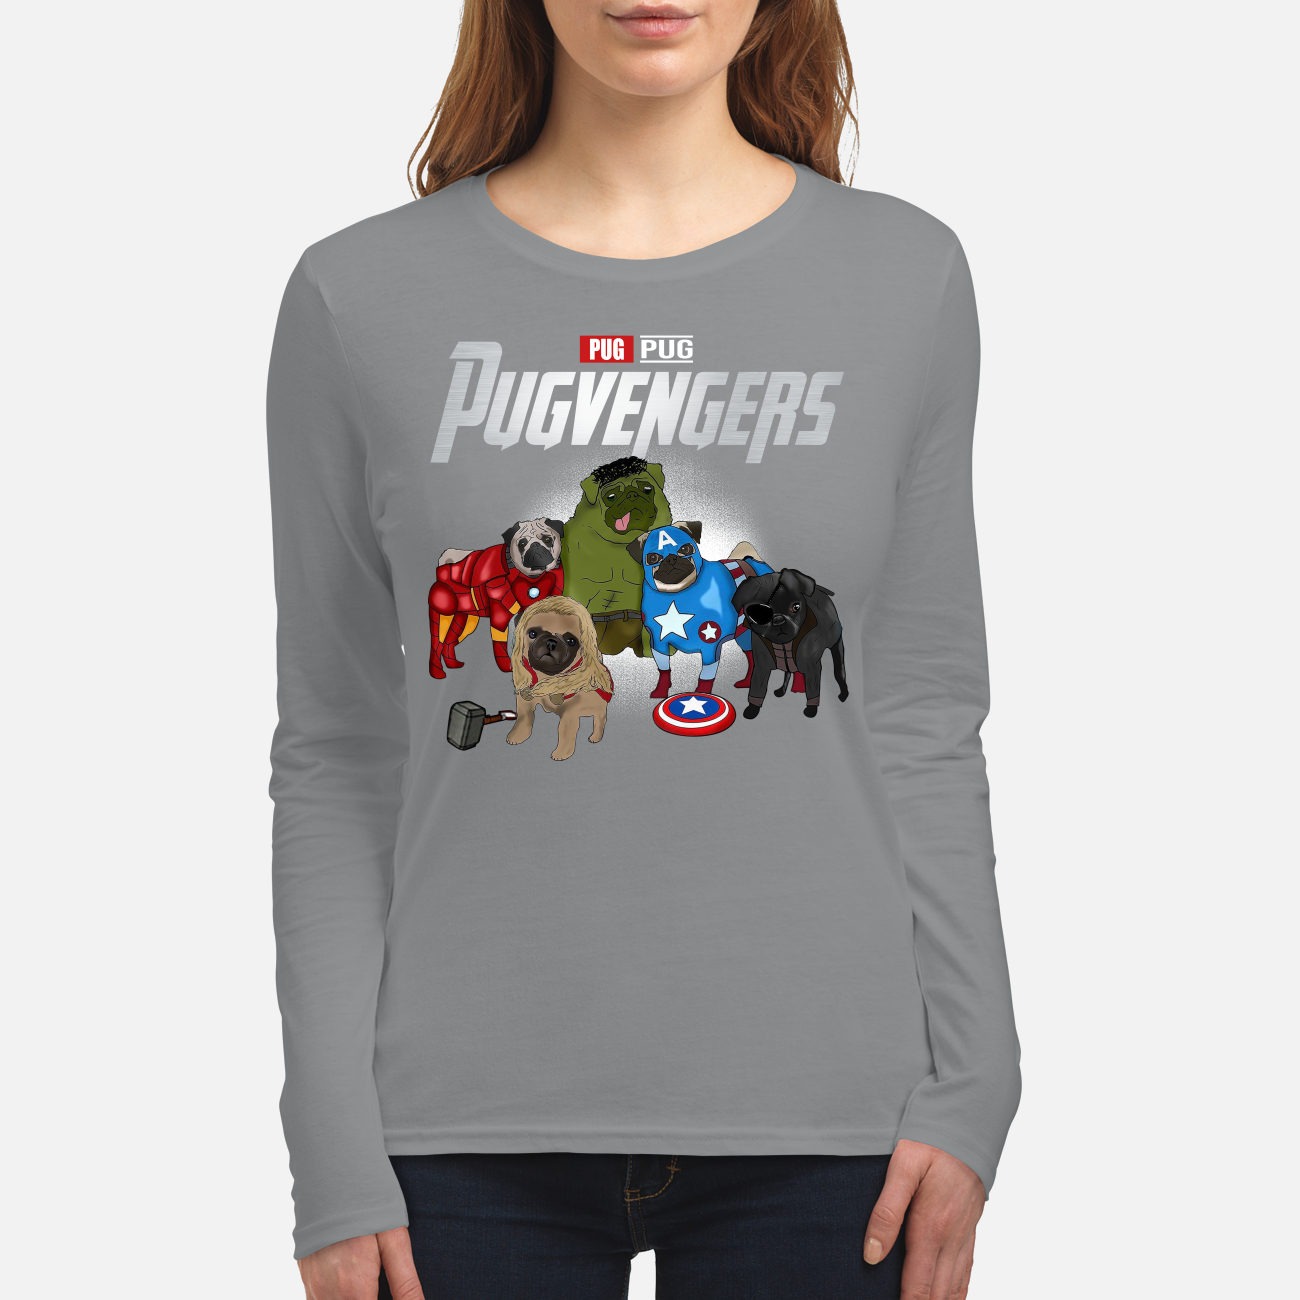 Pug avengers pugvengers women's long sleeved shirt